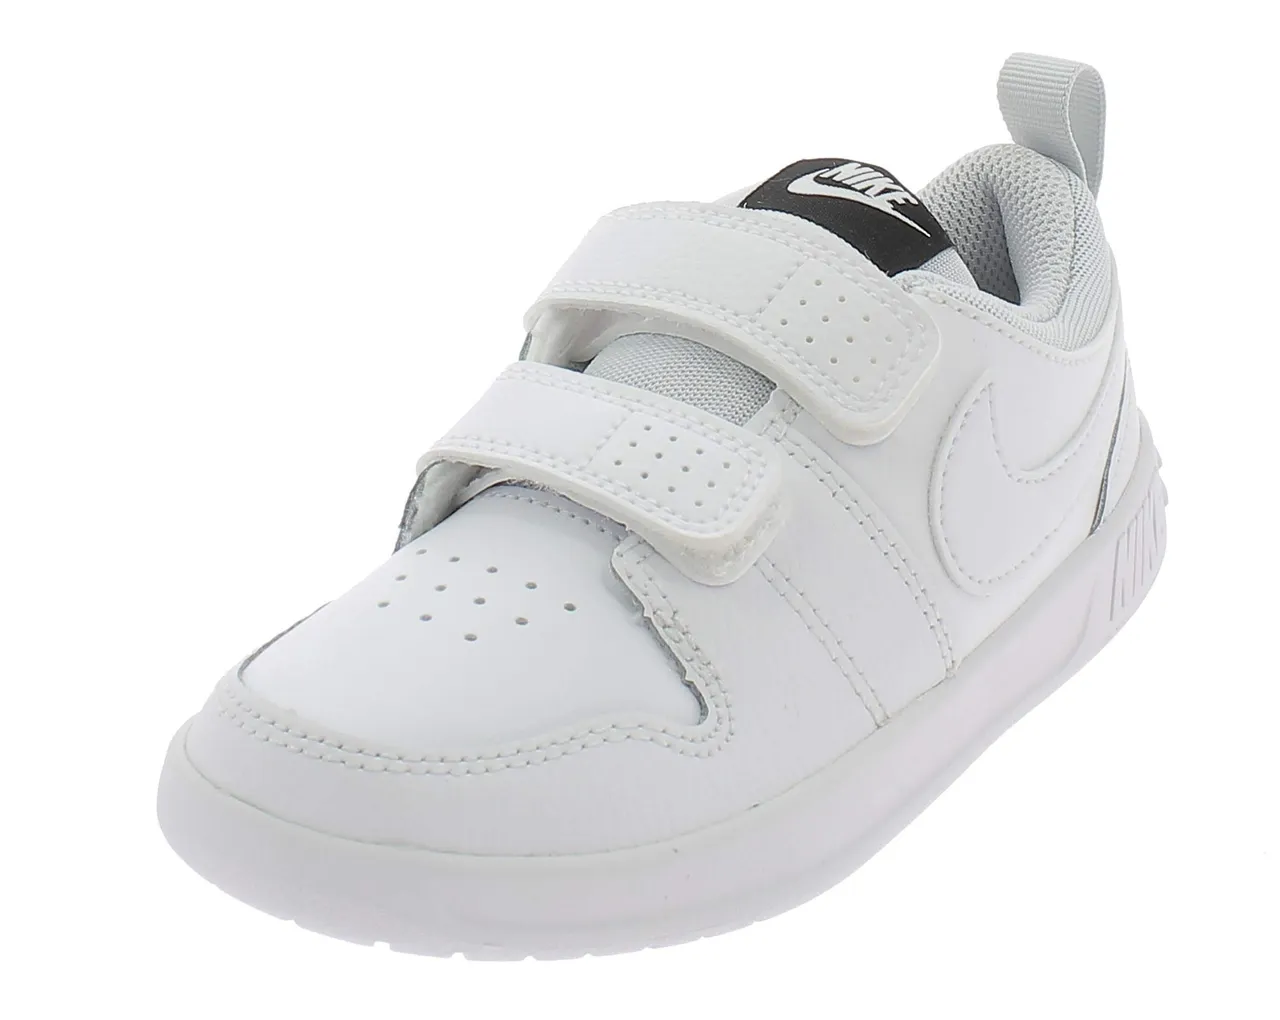 NIKE Unisex Kids Pico 5 (Psv) Tennis Shoes